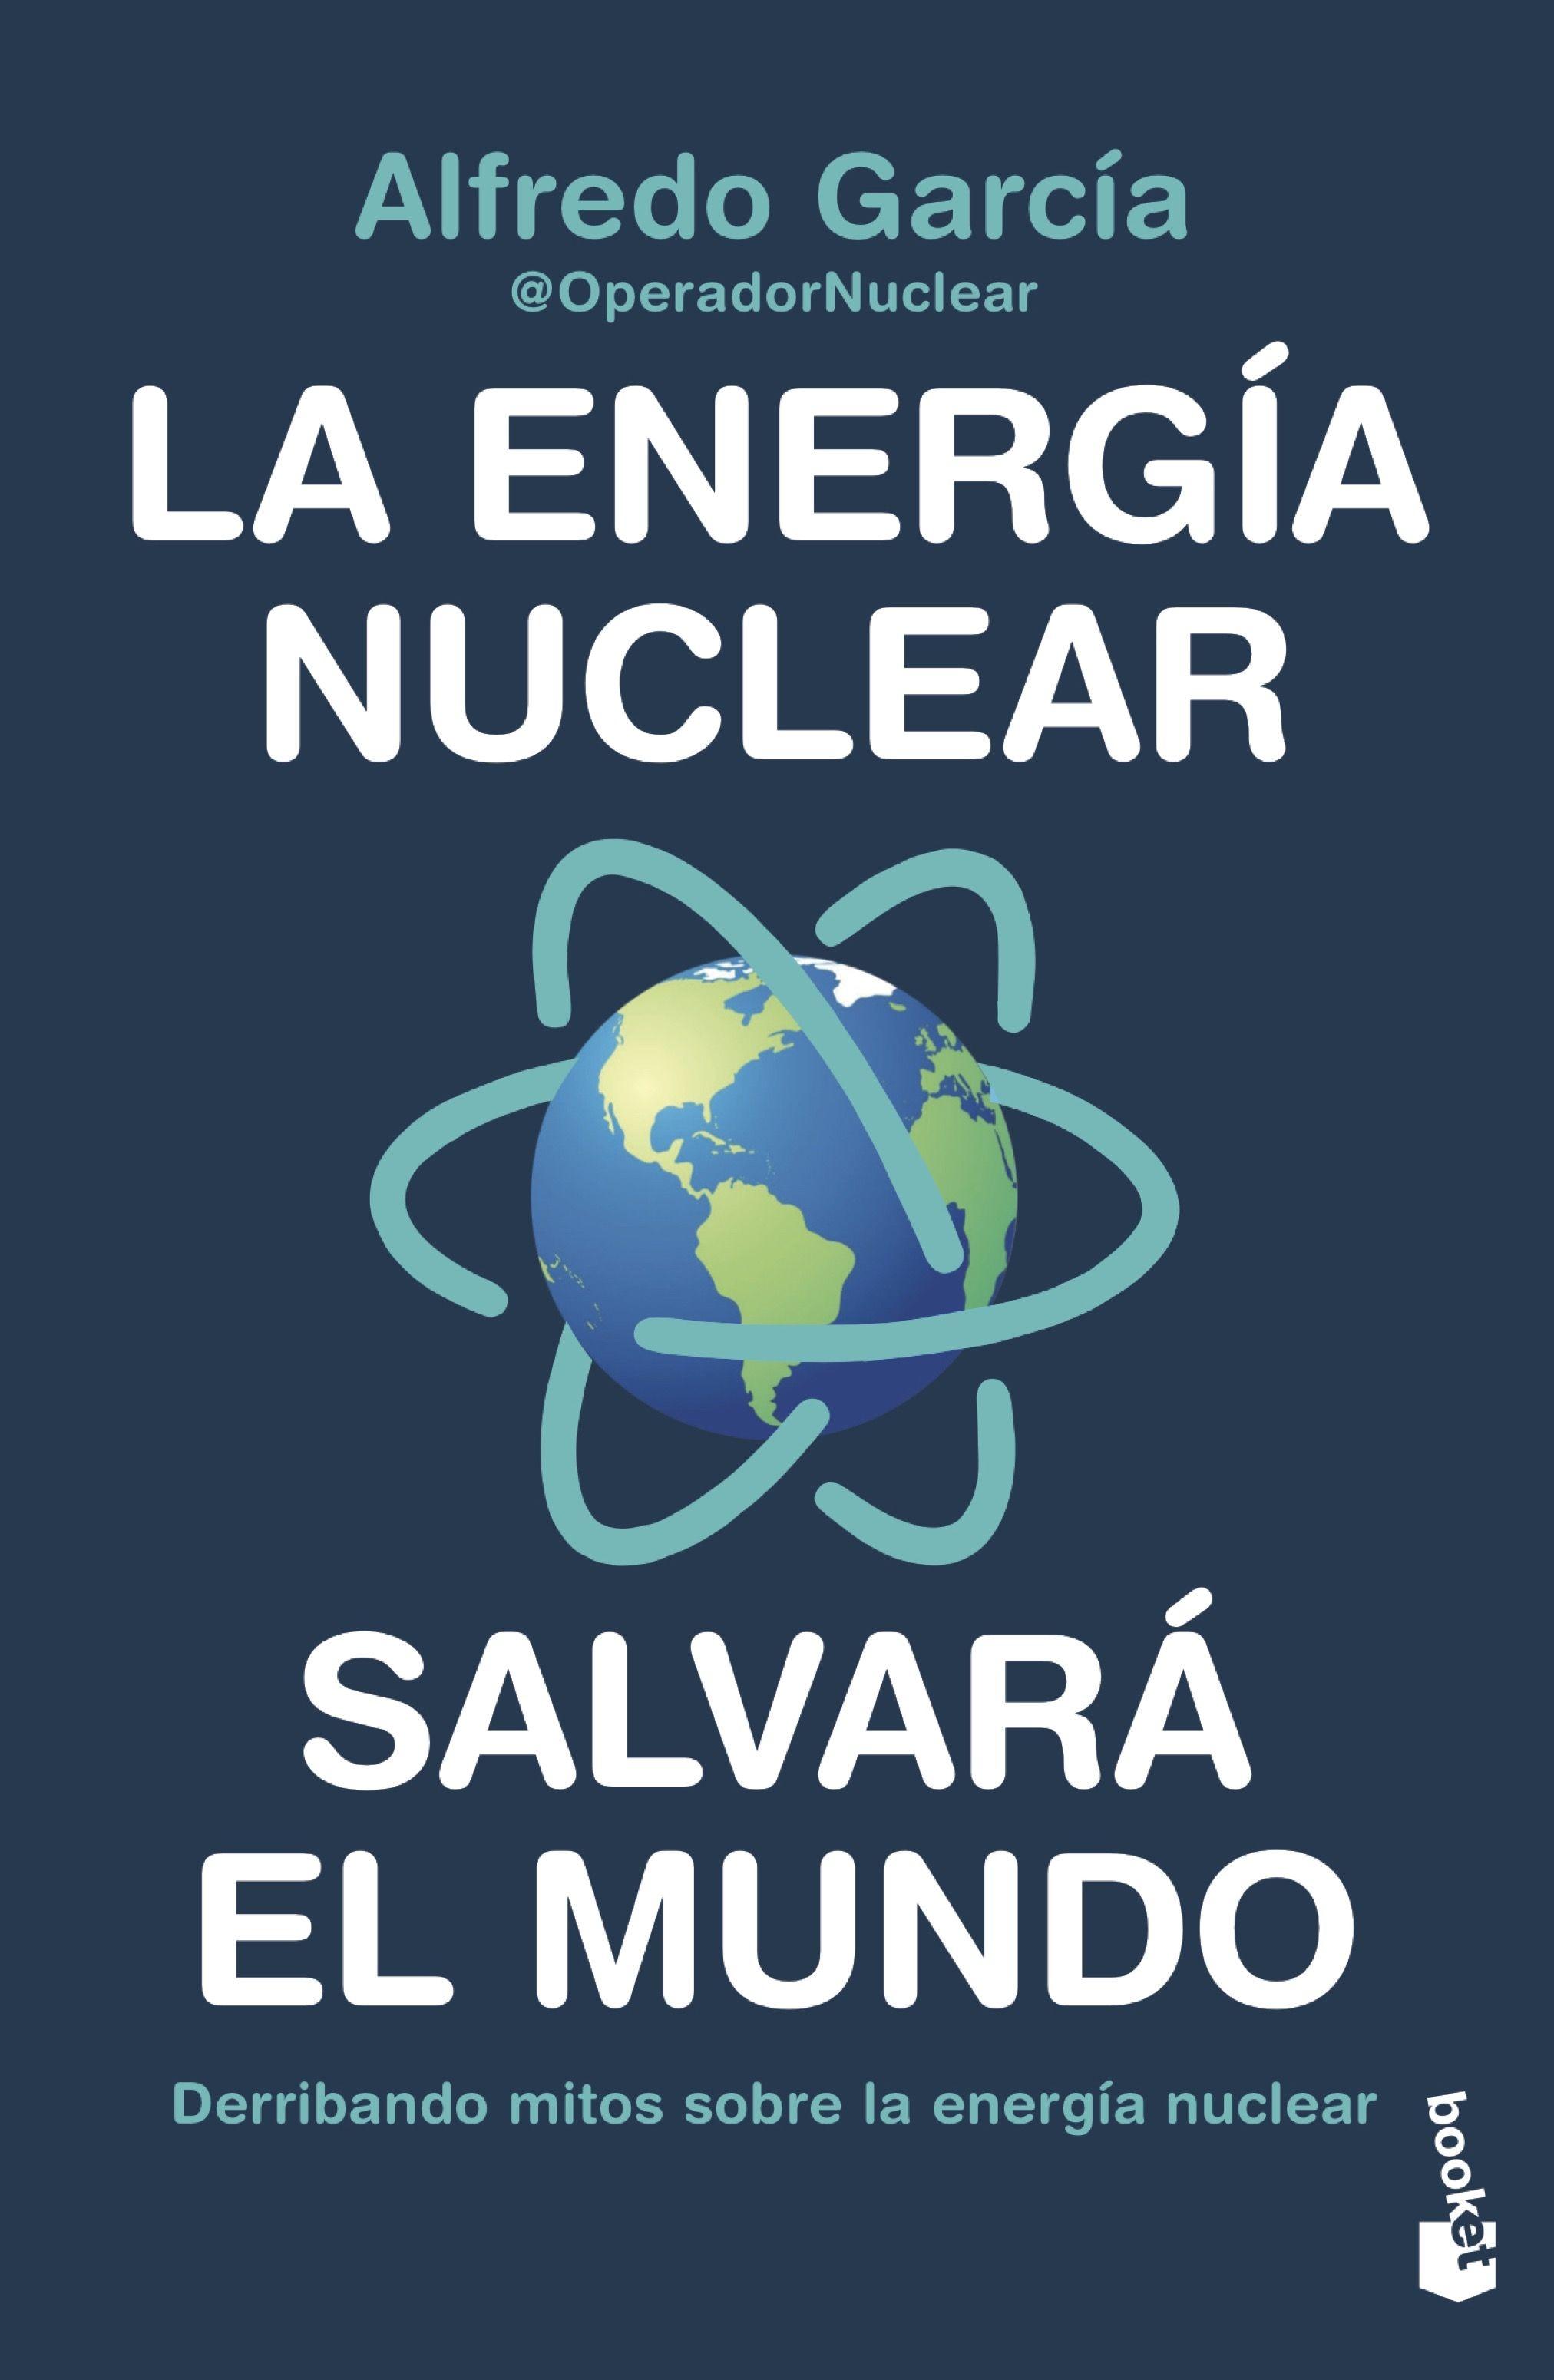 La Energía Nuclear Salvará el Mundo "Derribando Mitos sobre la Energía Nuclear"